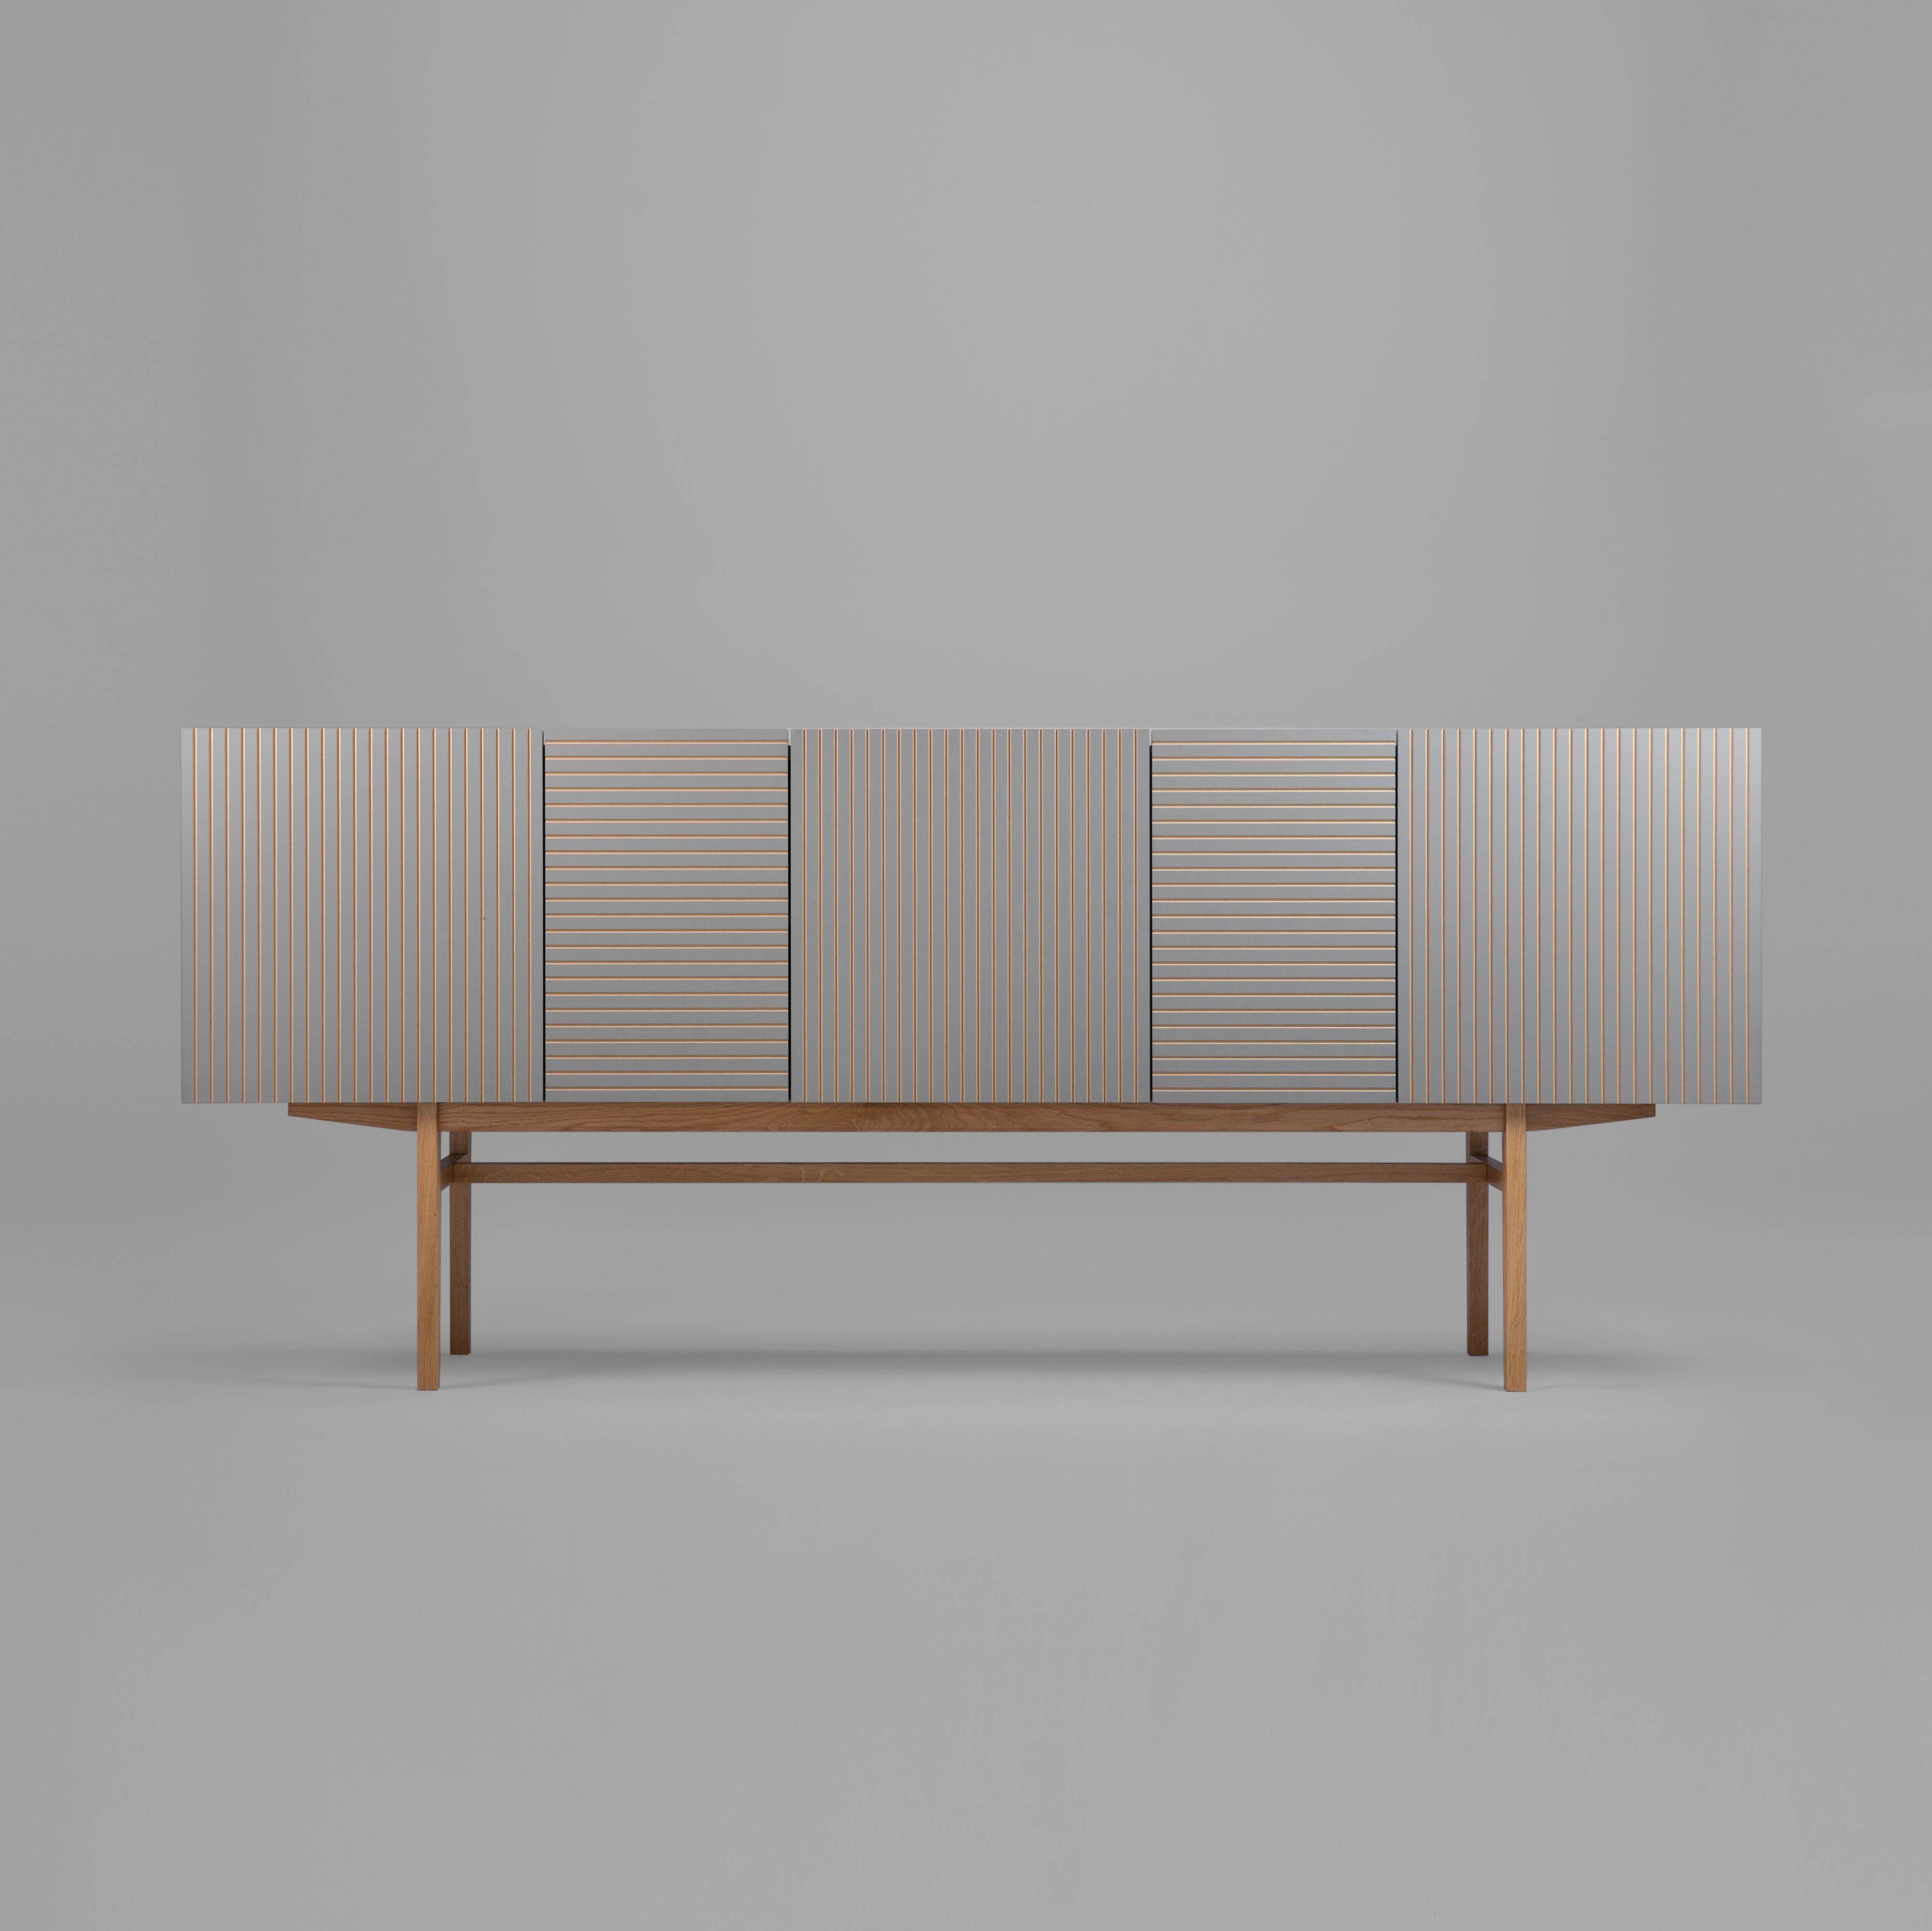 I.L.A.A., meuble complet de Phormy
Dimensions : D 40 x L 185 x H 85 cm.
Matériaux : acrylique gravé ou stratifié plat chêne laqué base en chêne

Différents matériaux et tailles disponibles.

ORTO est un hommage à la géométrie. 
Les lignes